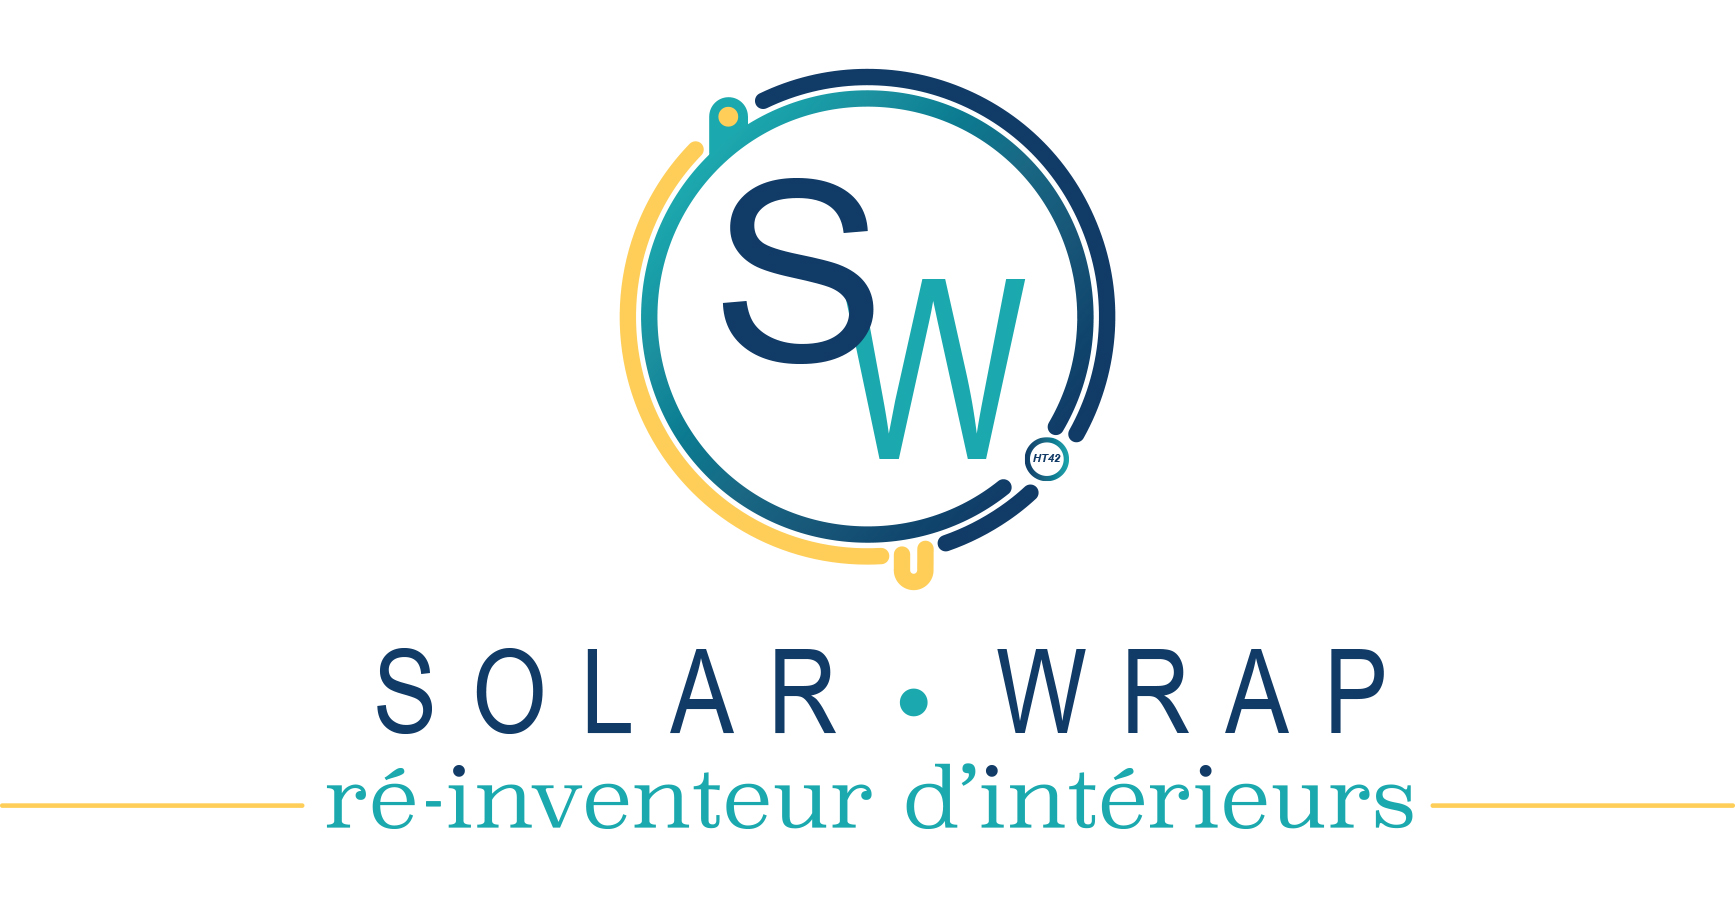 Solar Wrap : deux solutions pour lutter contre la chaleur et réaliser du home staging